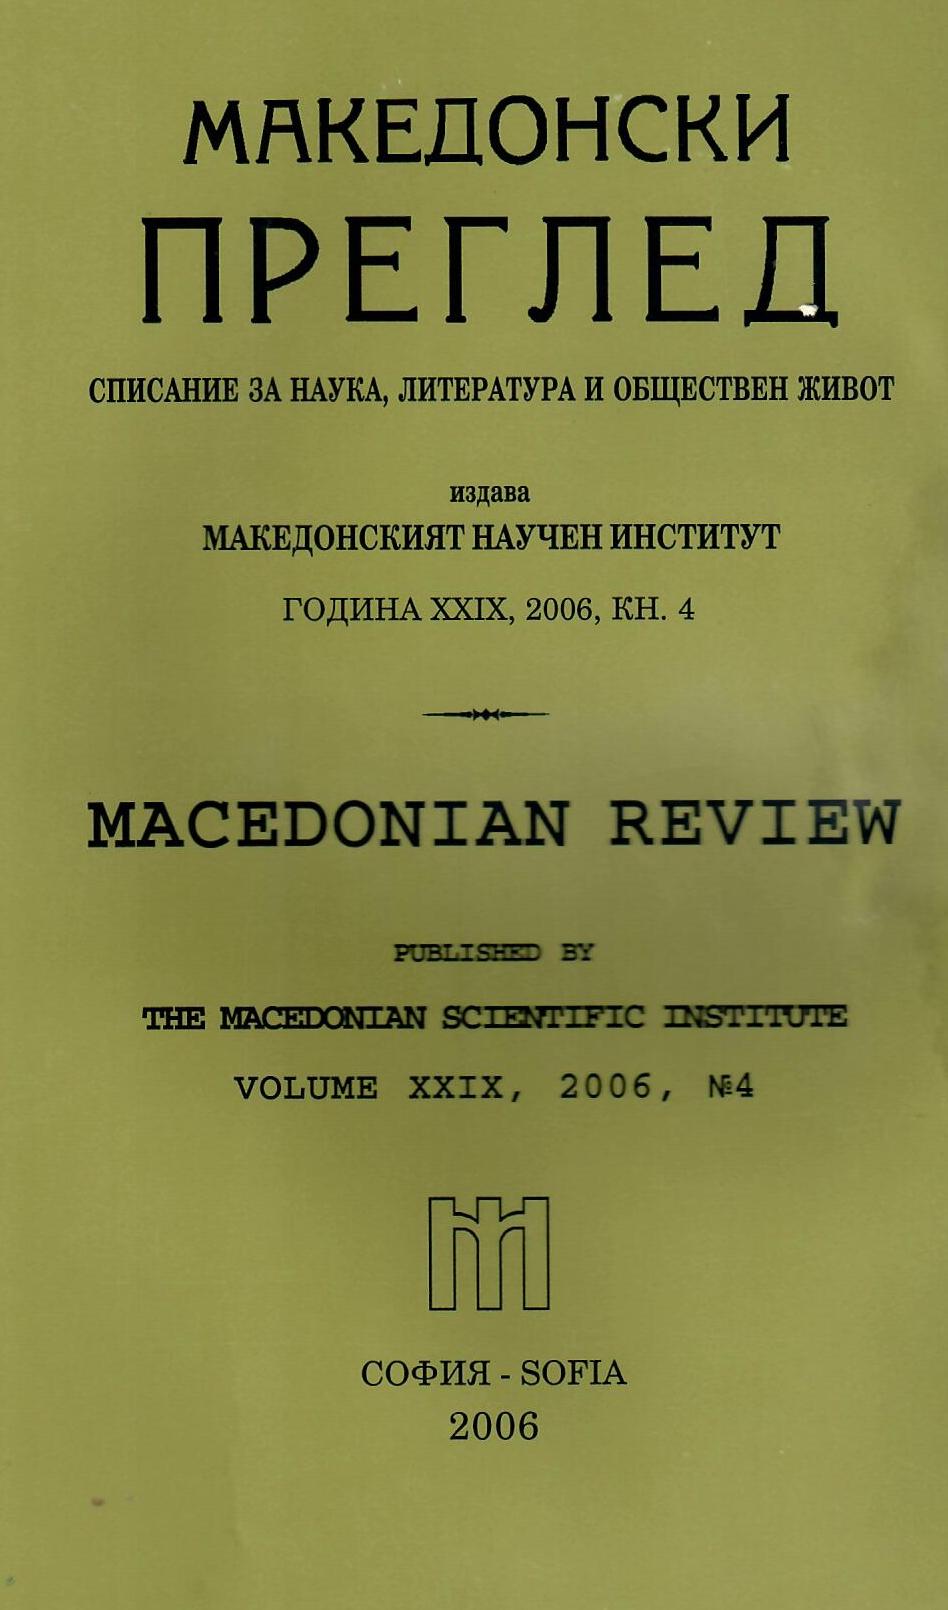 Сръбската културно-политическа пропаганда в Македония през 70-те години на XIX в. - нова форма за асимилация на български земи